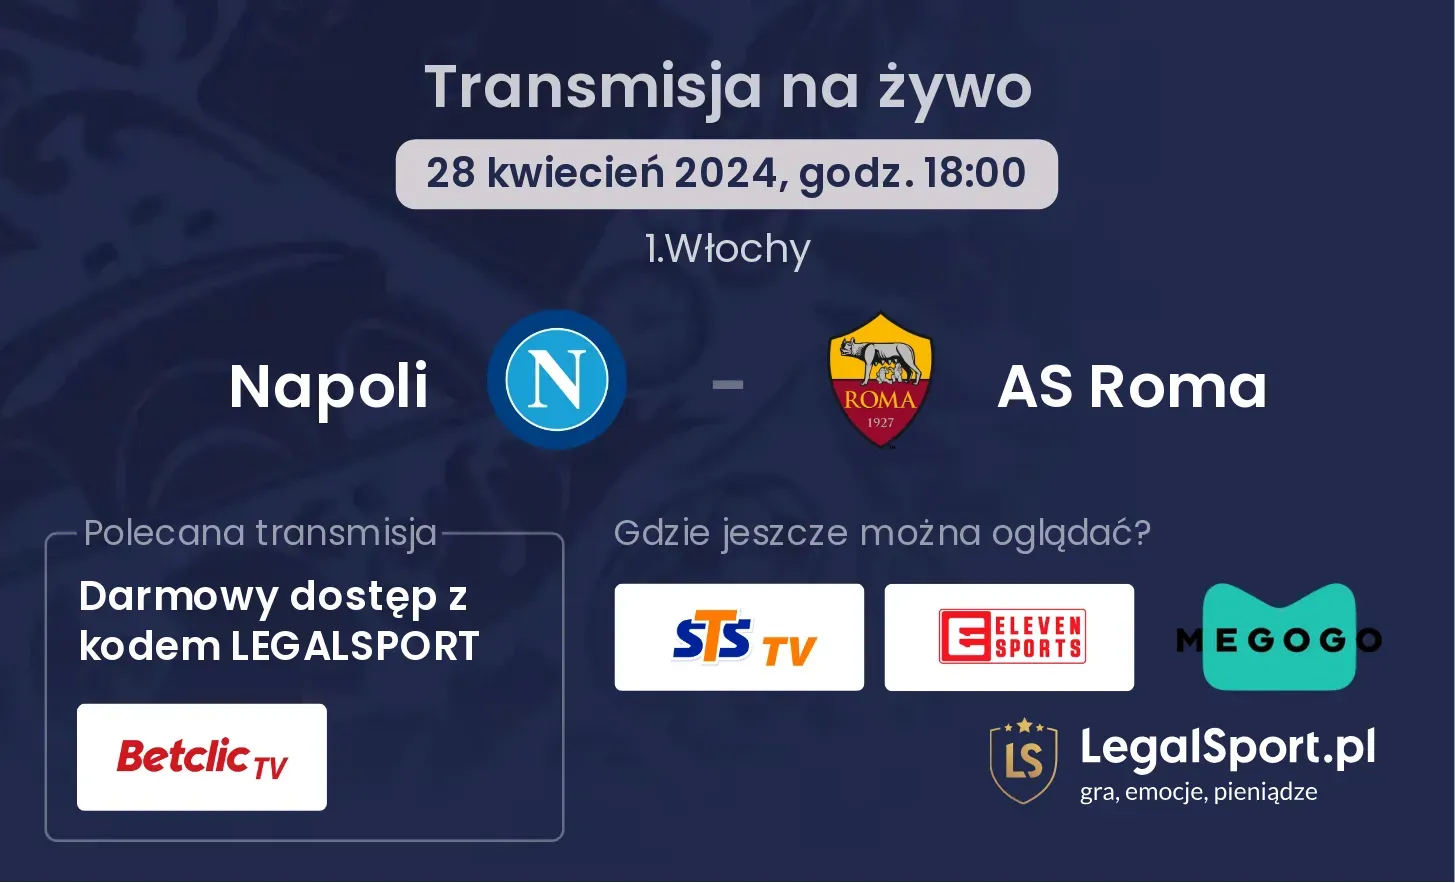 Napoli - AS Roma transmisja na żywo